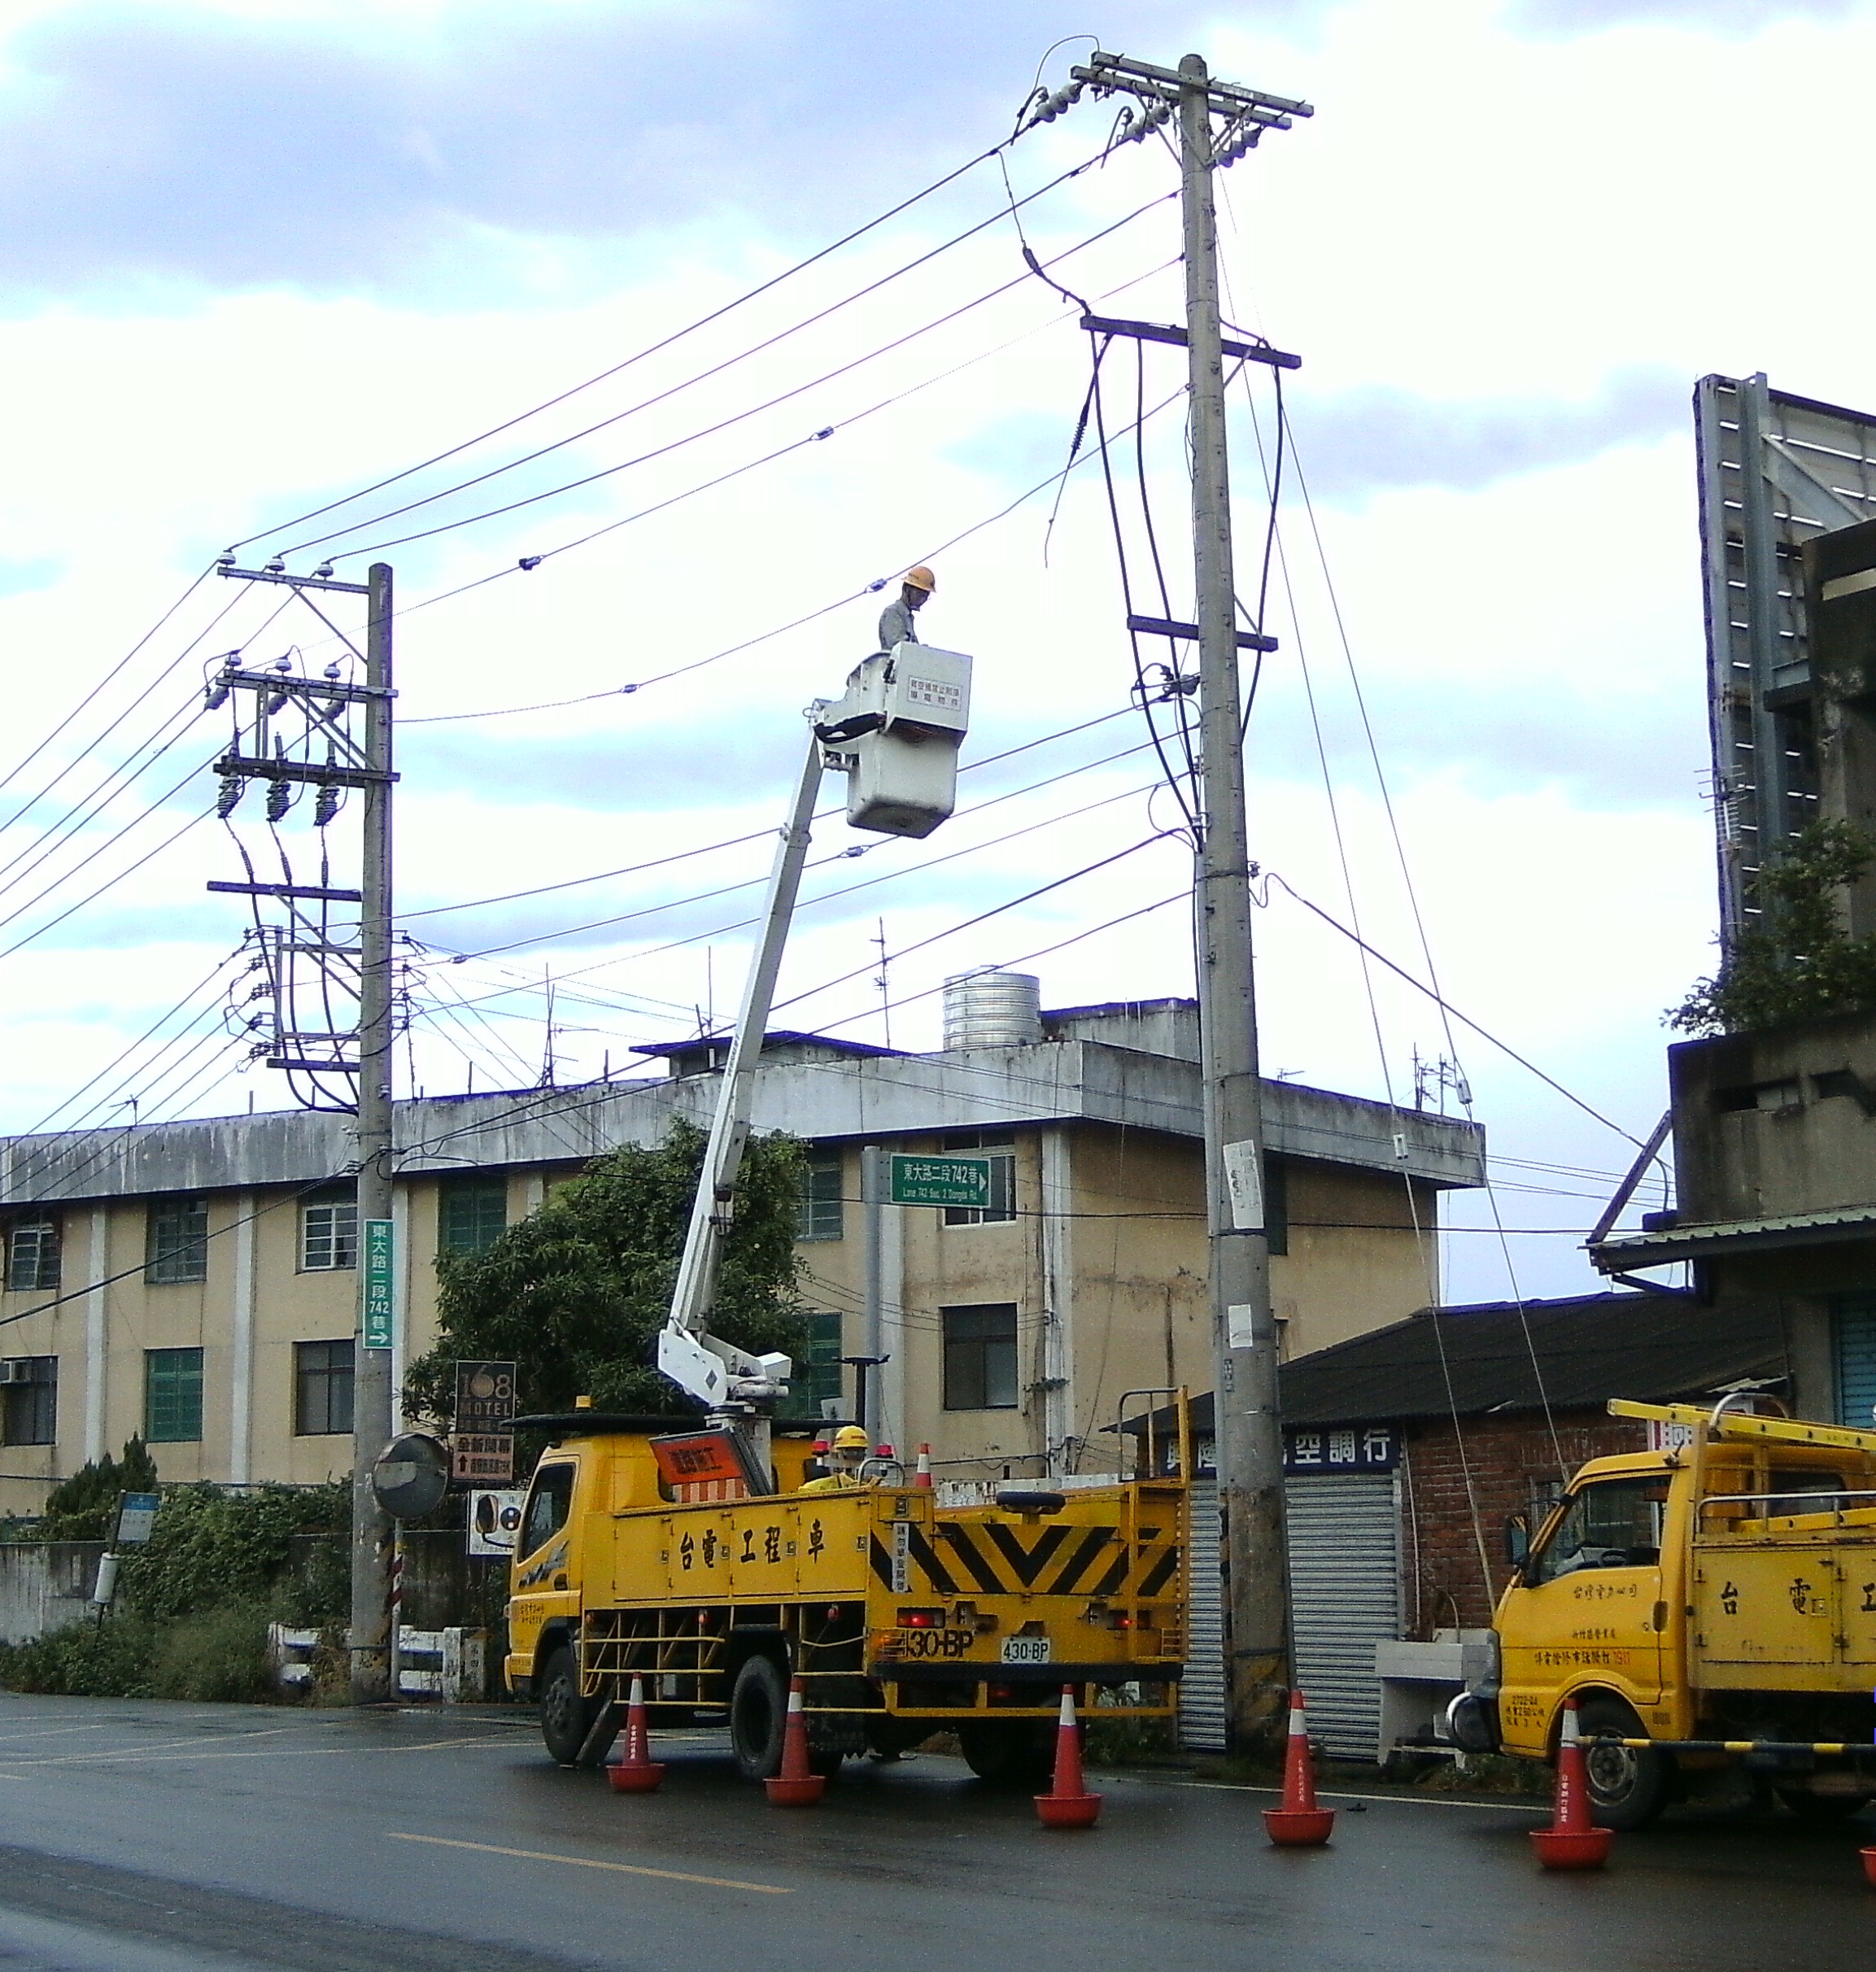 尼莎颱風警報解除 電力供應恢復正常